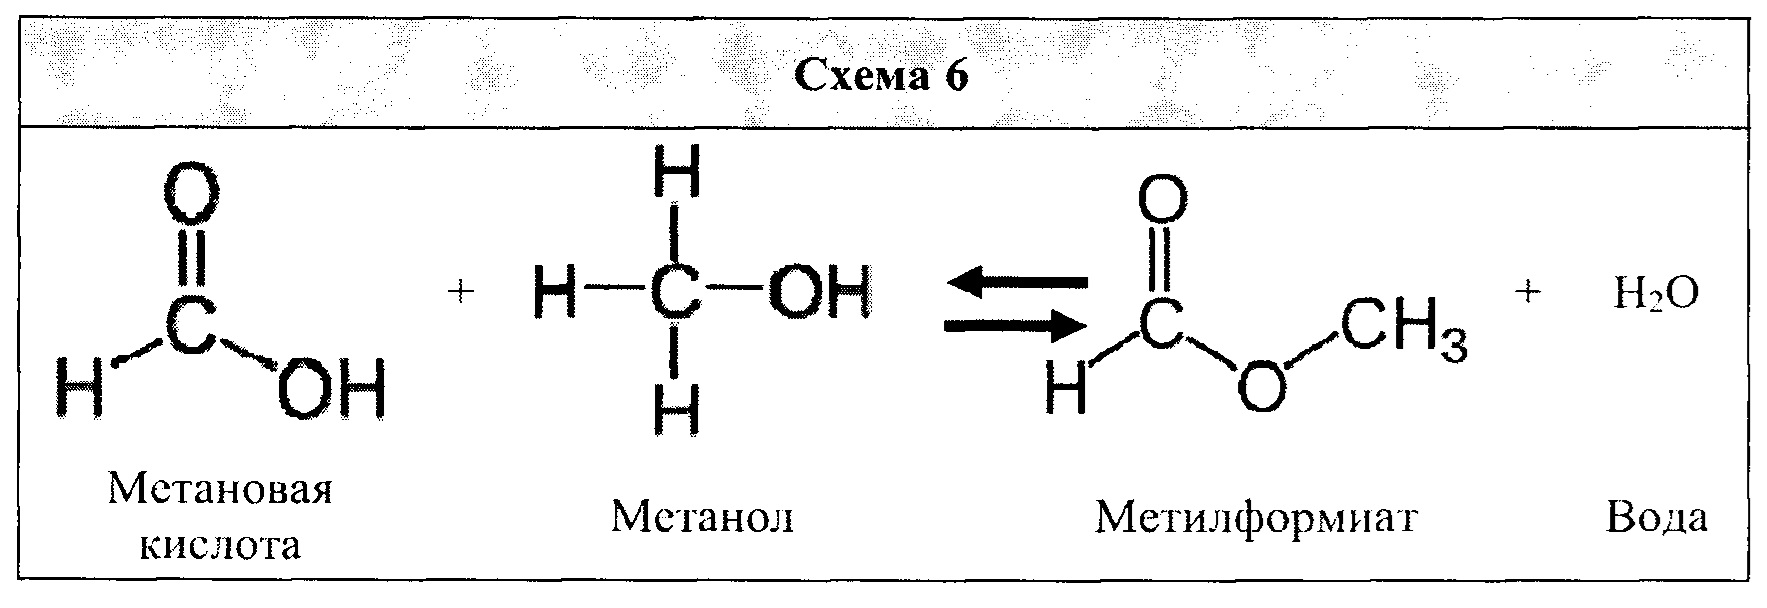 Получение кислоты из метана